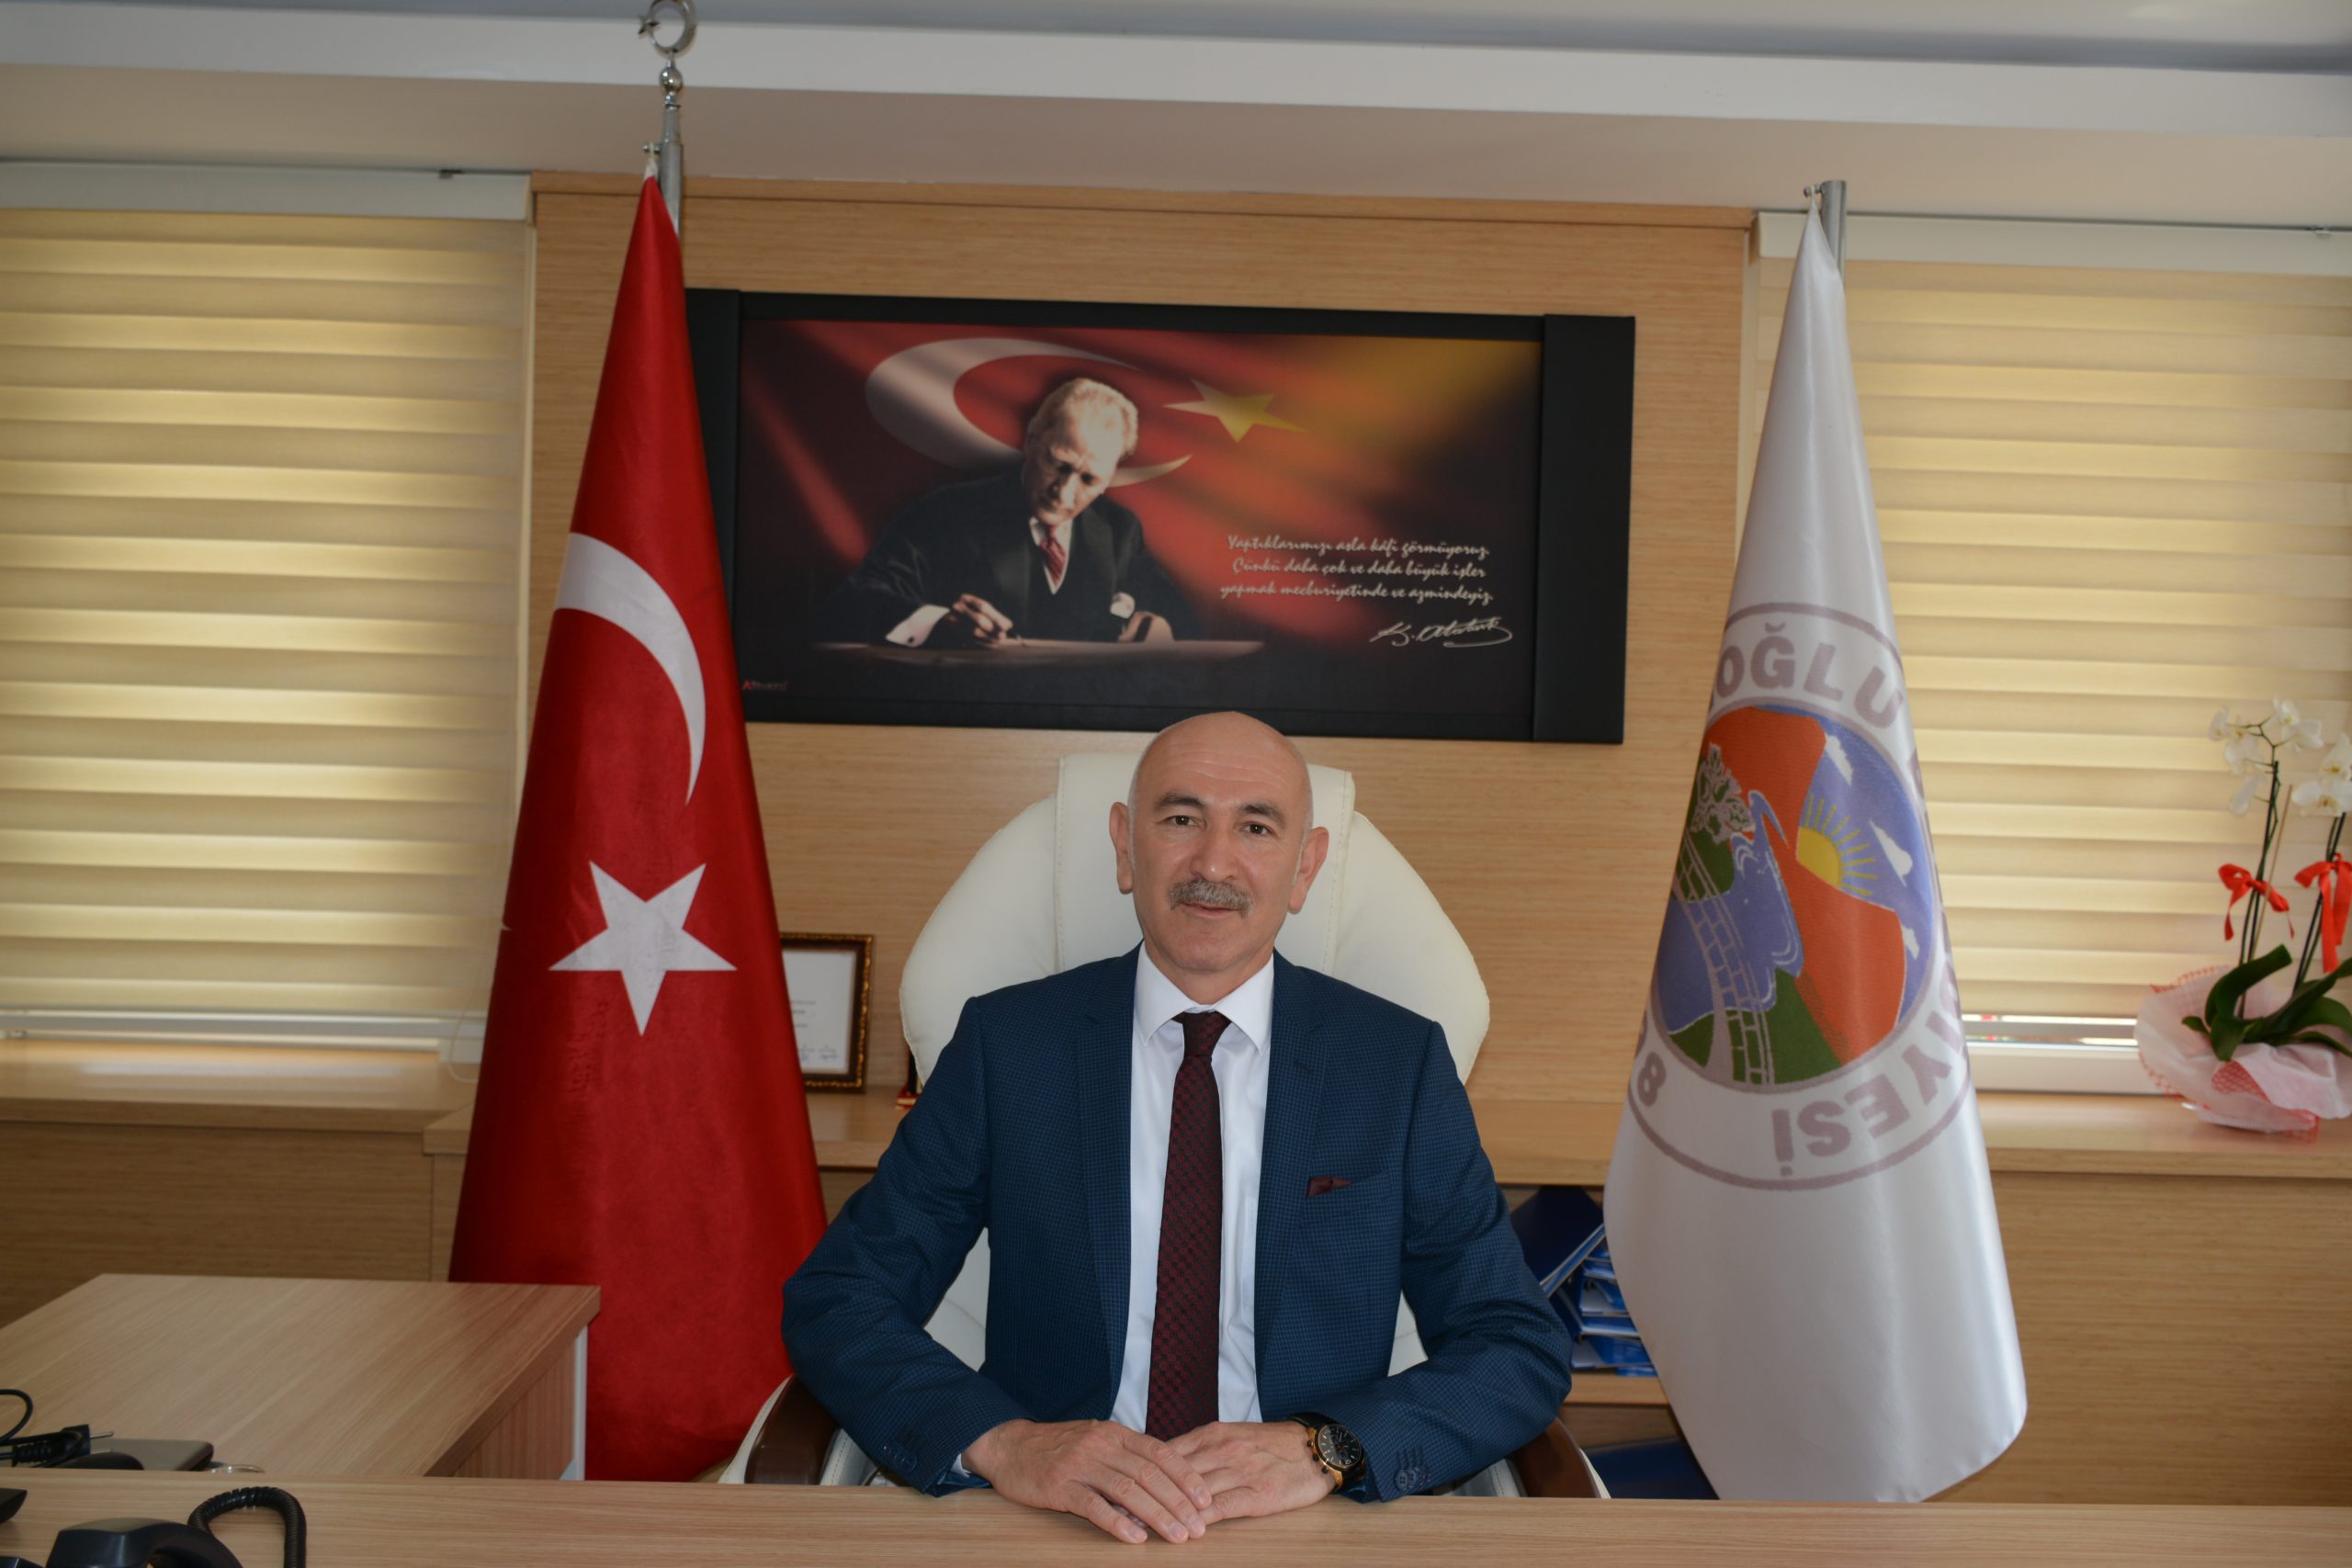 Başkan Çetin; “Hedeflere Ulaşmasını Bilen Lider”